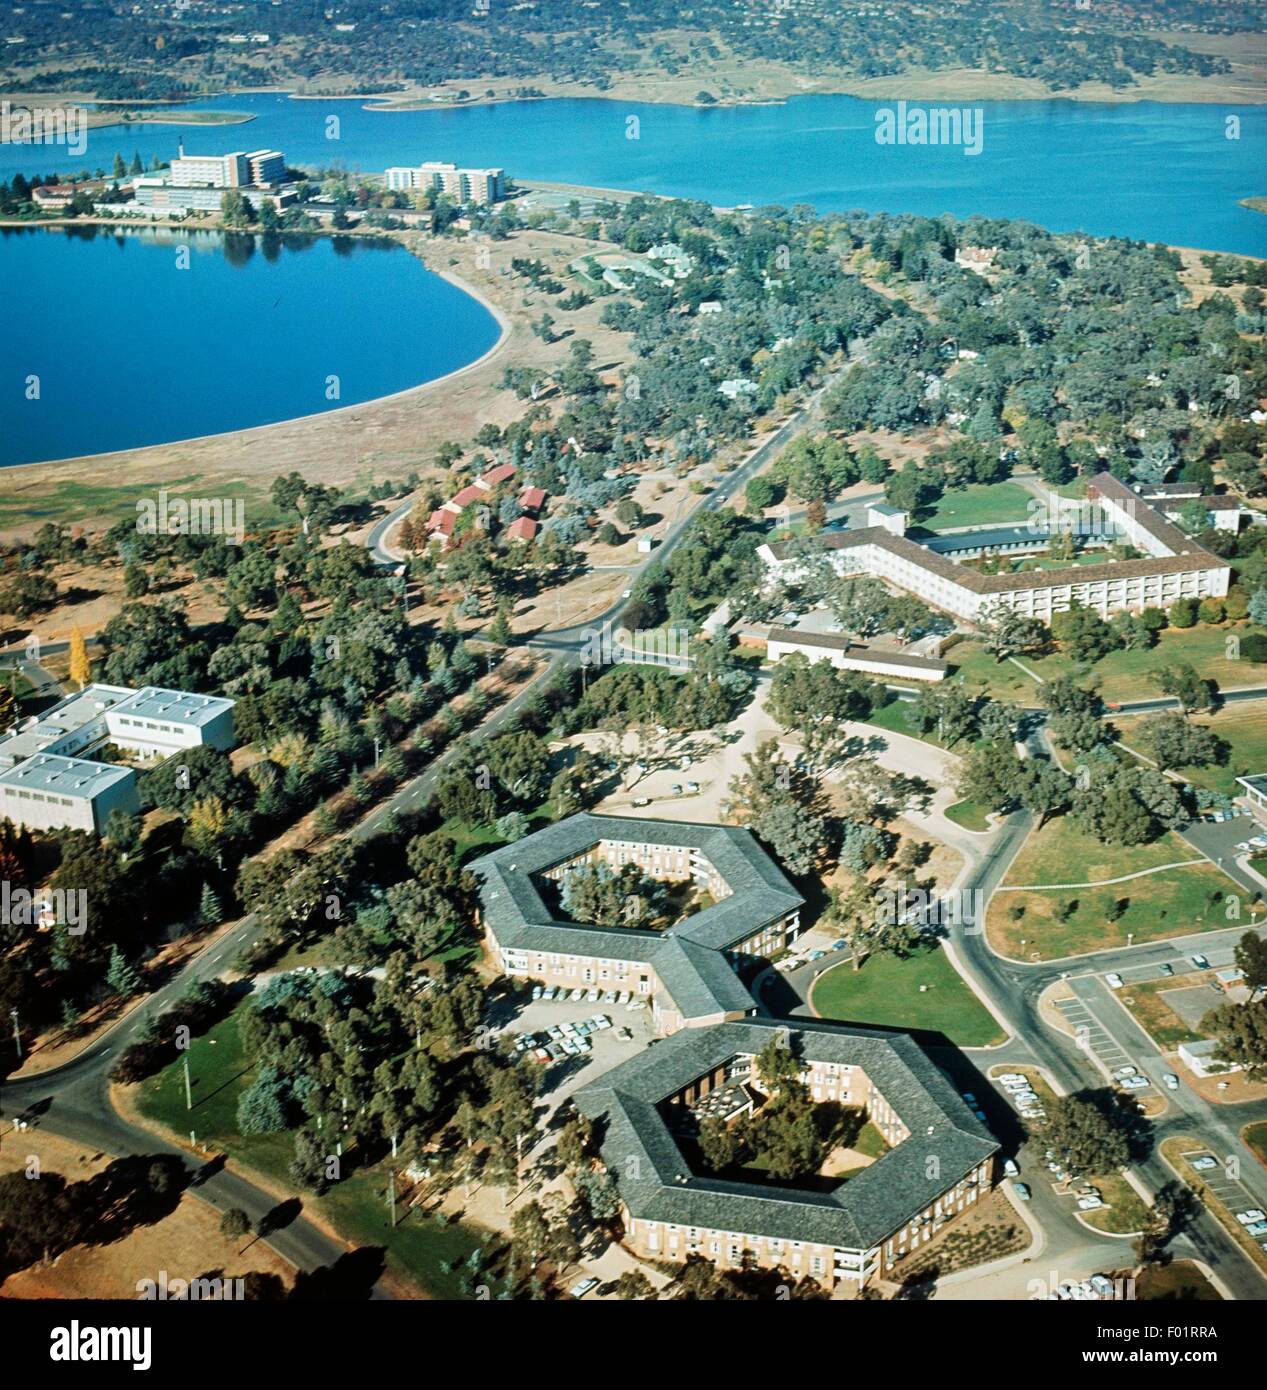 Vue aérienne de l'Université nationale - Canberra, Australie Banque D'Images